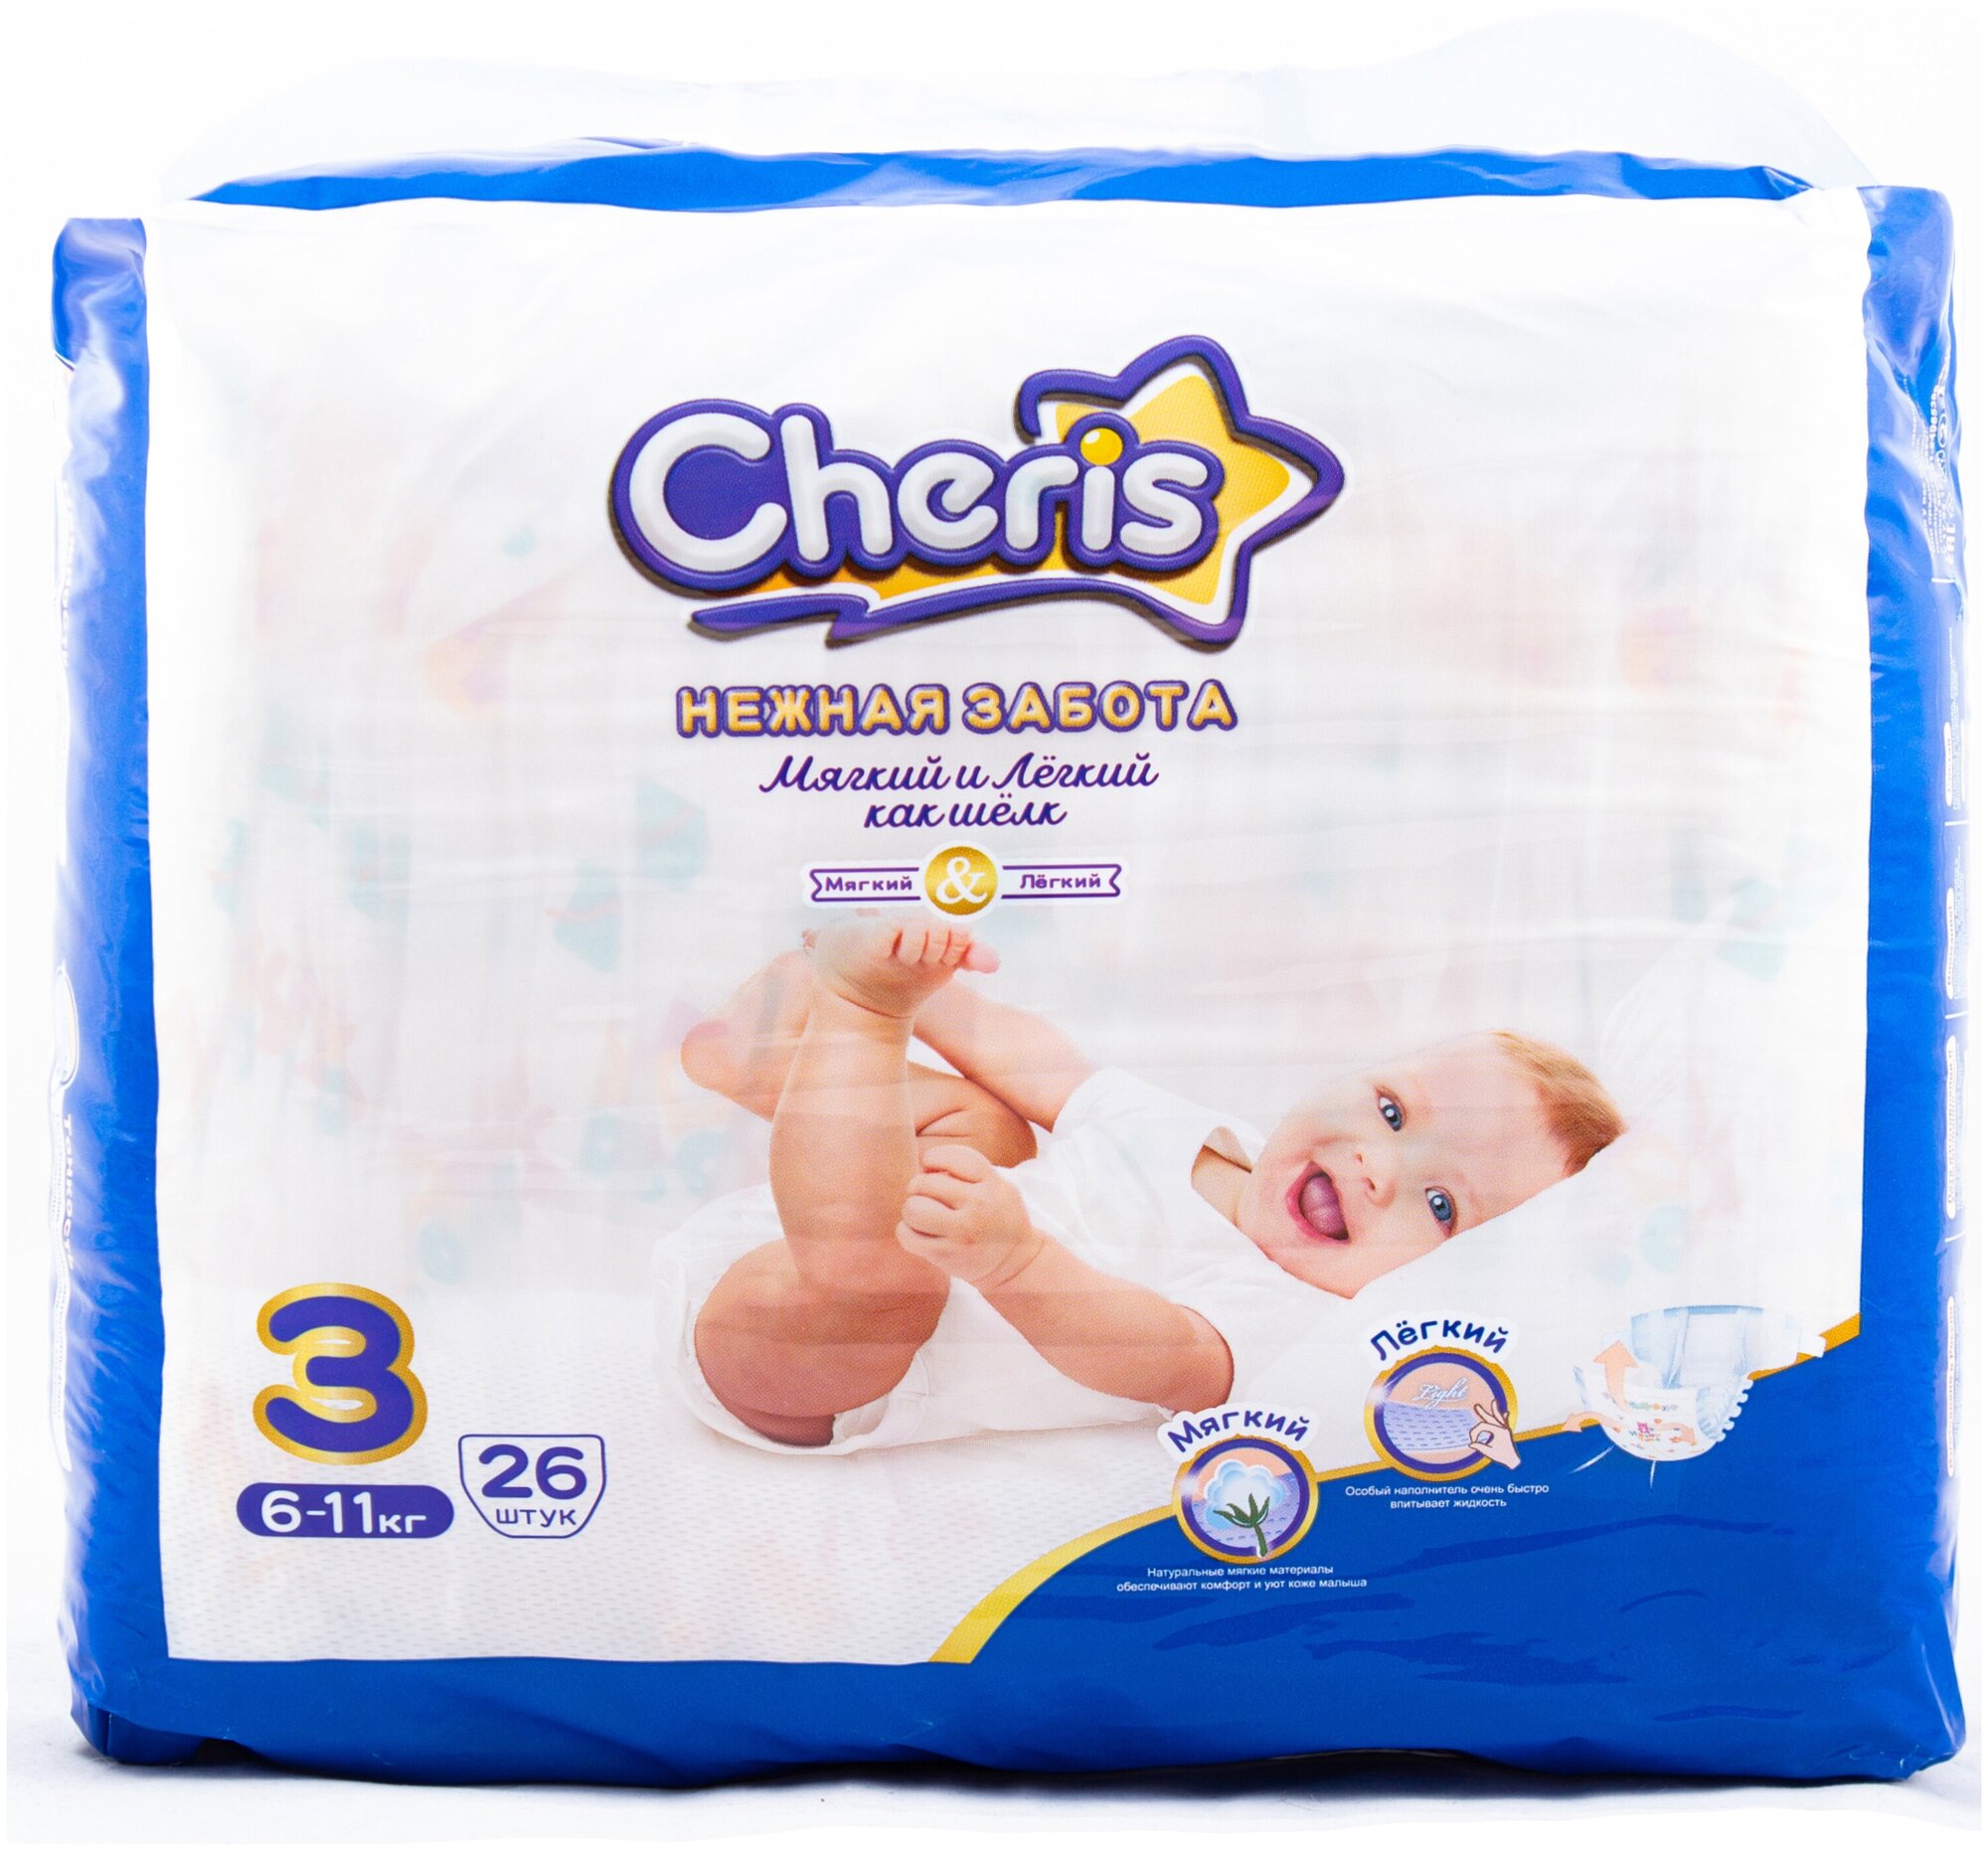 Детские подгузники Cheris 26 шт. размер М (6-11кг.)